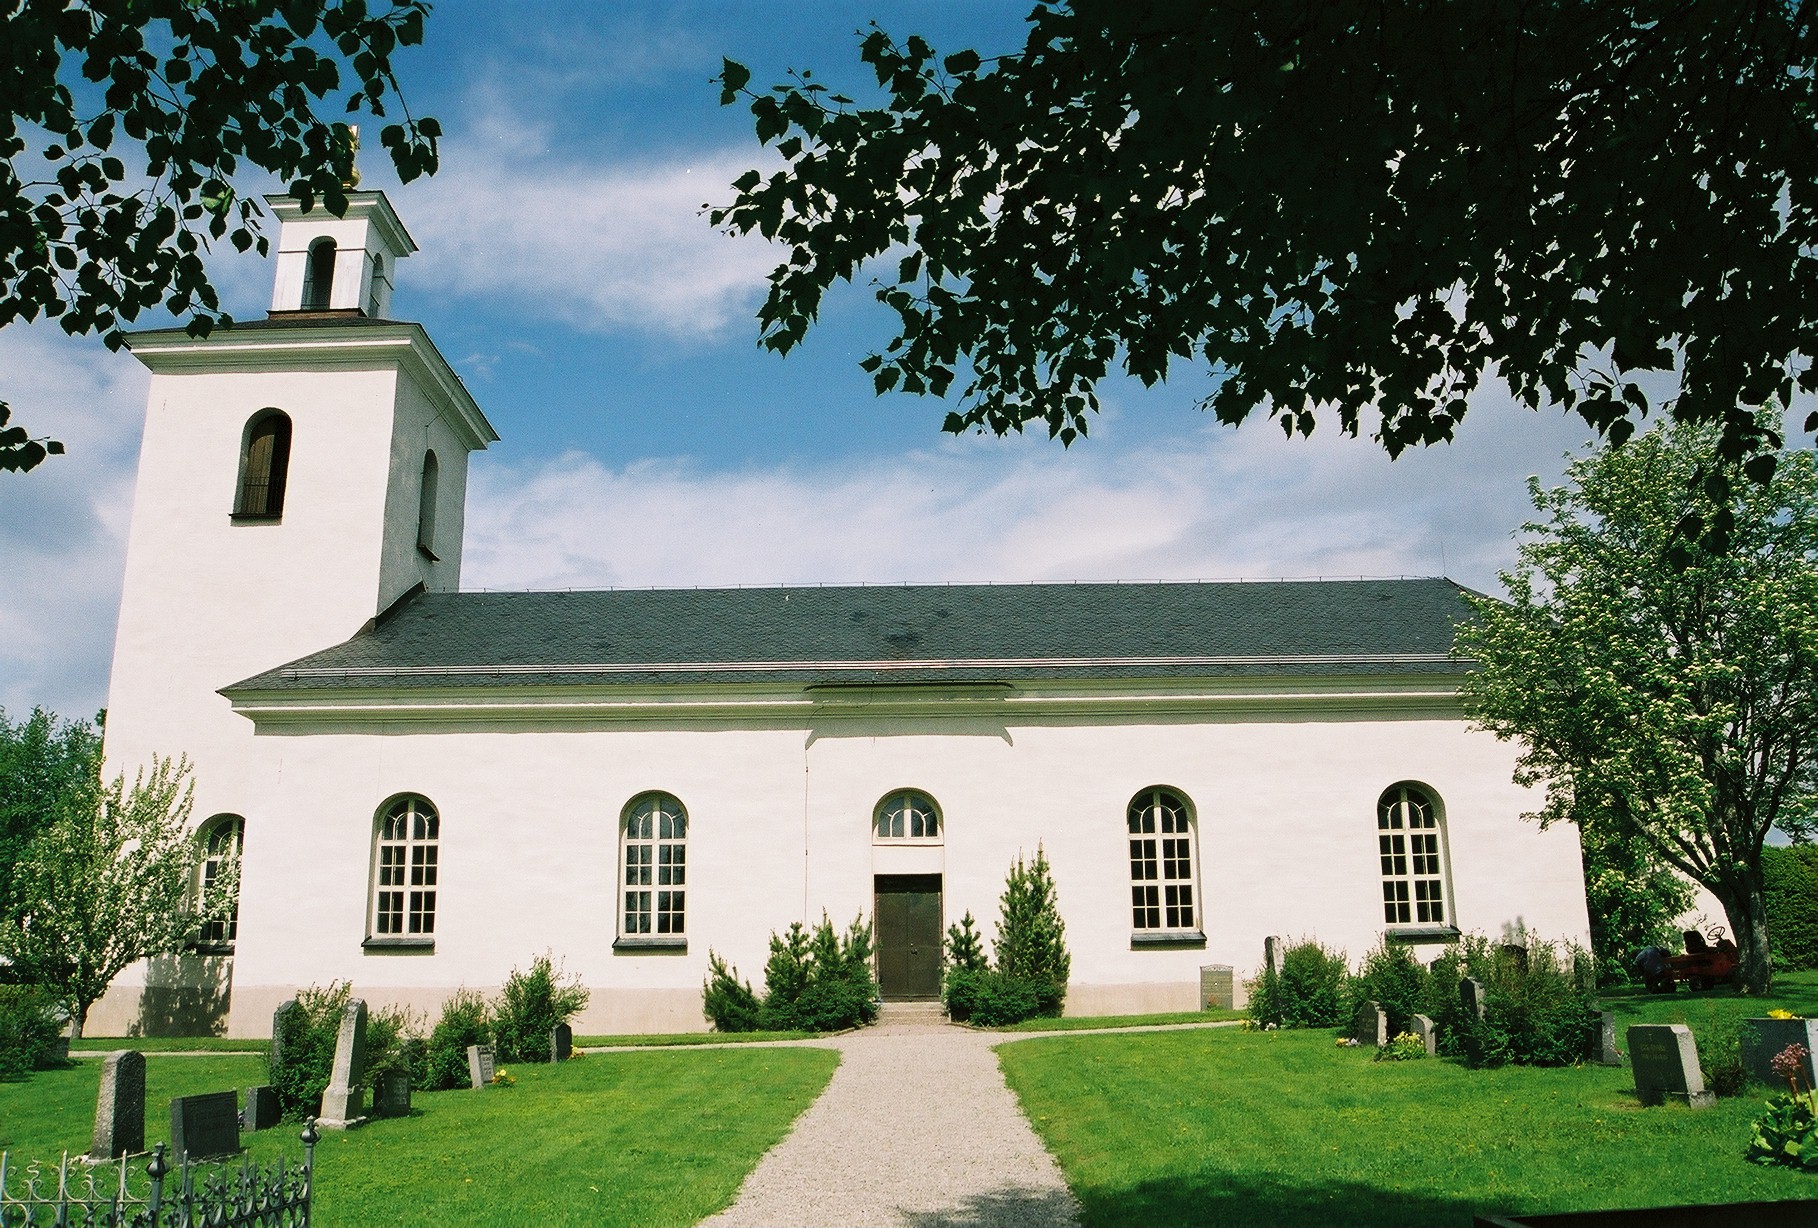 Sundsjö kyrka med omgivande kyrkogård sett från söder. 

Foton tagna vid inventering av Isa Sundqvist & Christina Persson, Jämtlands läns museum 2005-2006. 